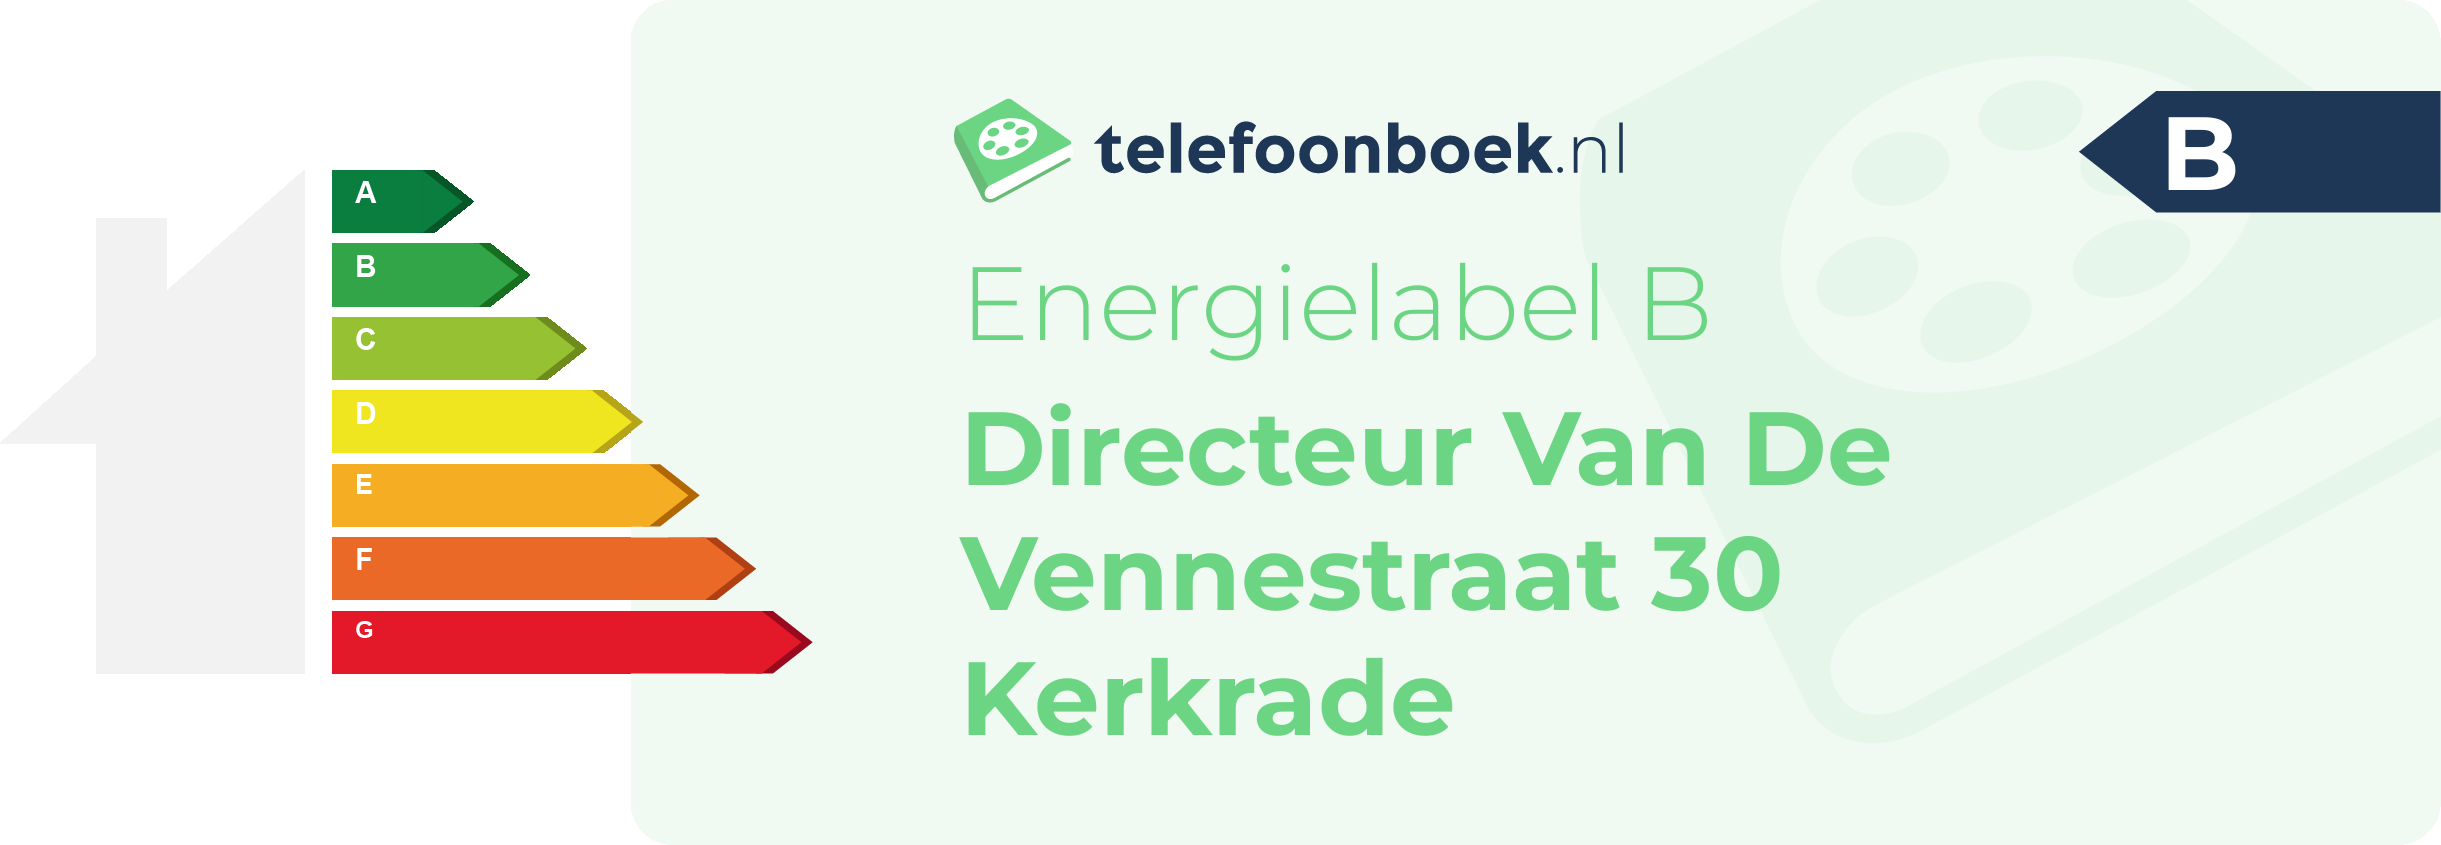 Energielabel Directeur Van De Vennestraat 30 Kerkrade